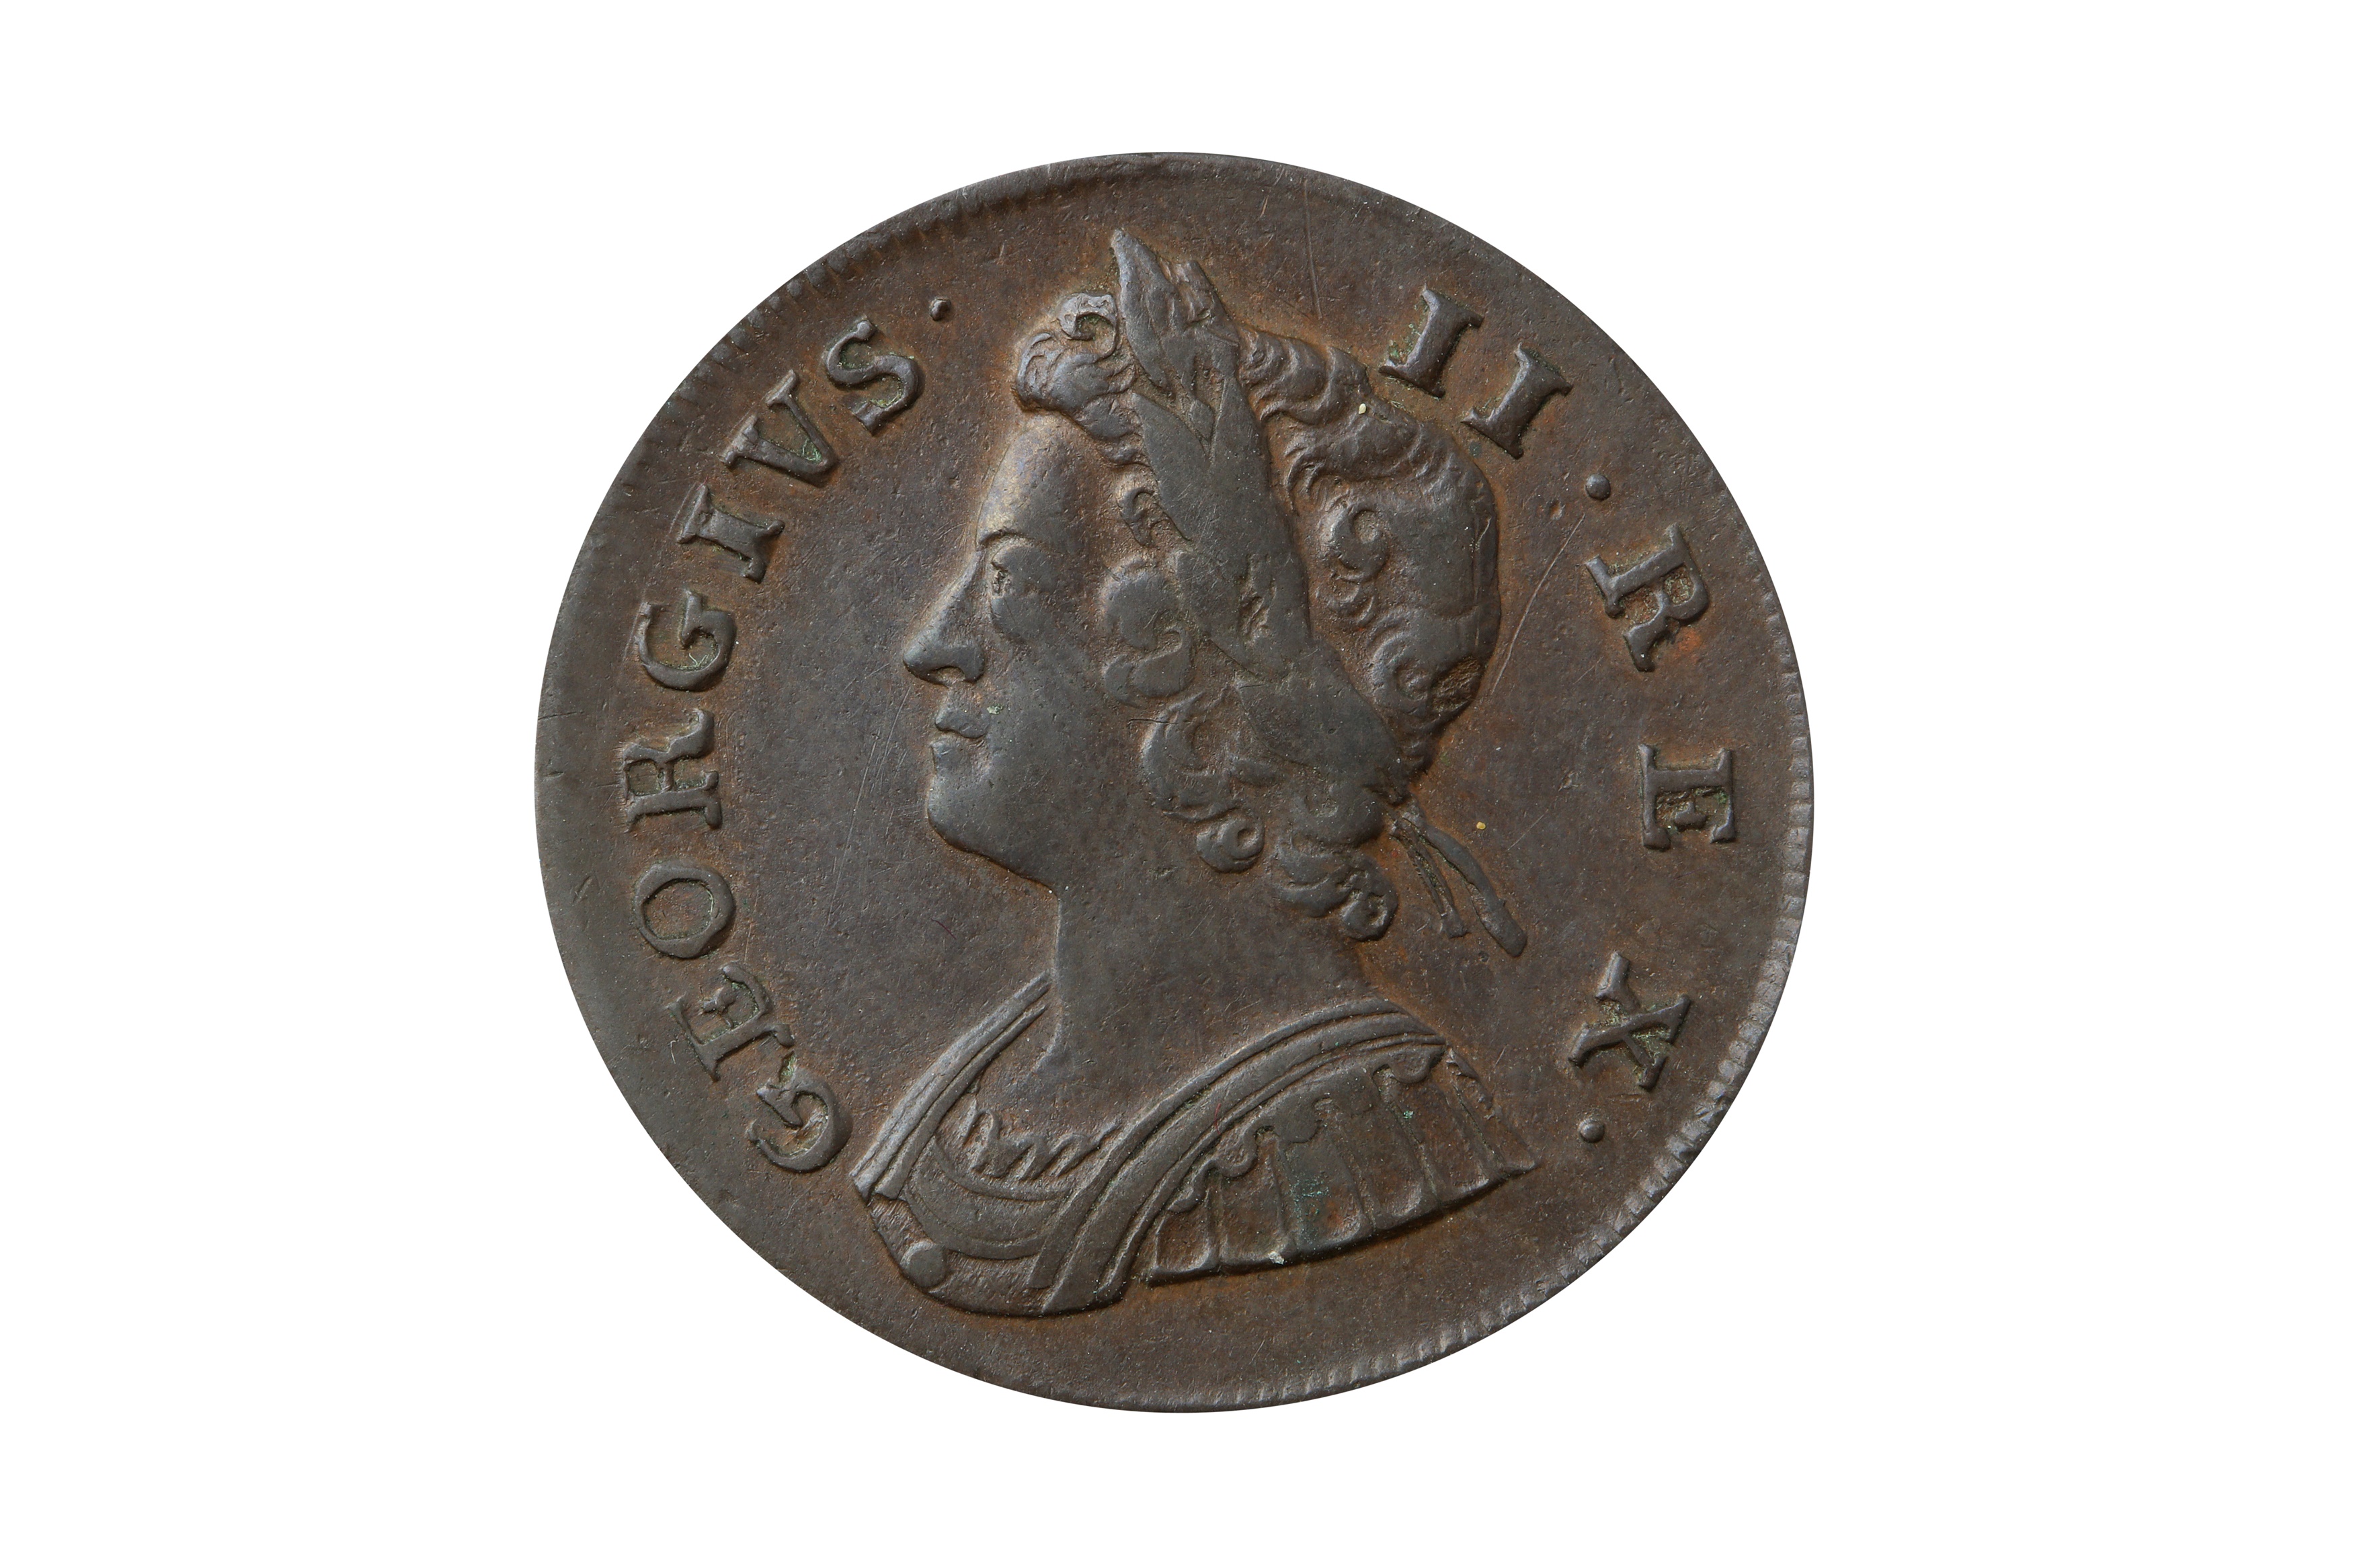 GEORGE II (1727 - 1760), 1738 HALFPENNY.